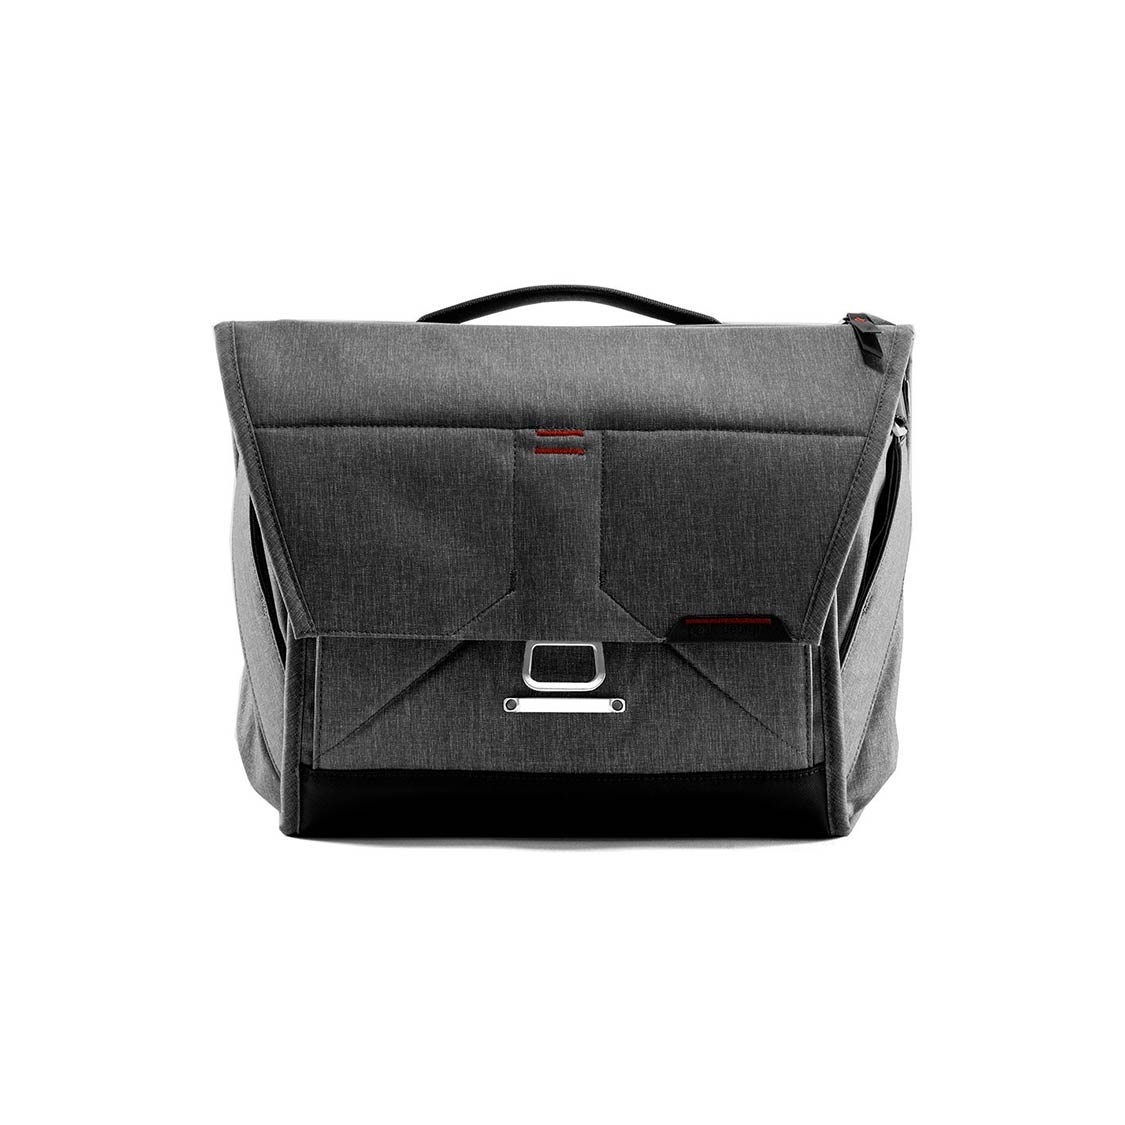 Peak Design Everyday Messenger Bag 13 V2 (charcoal)